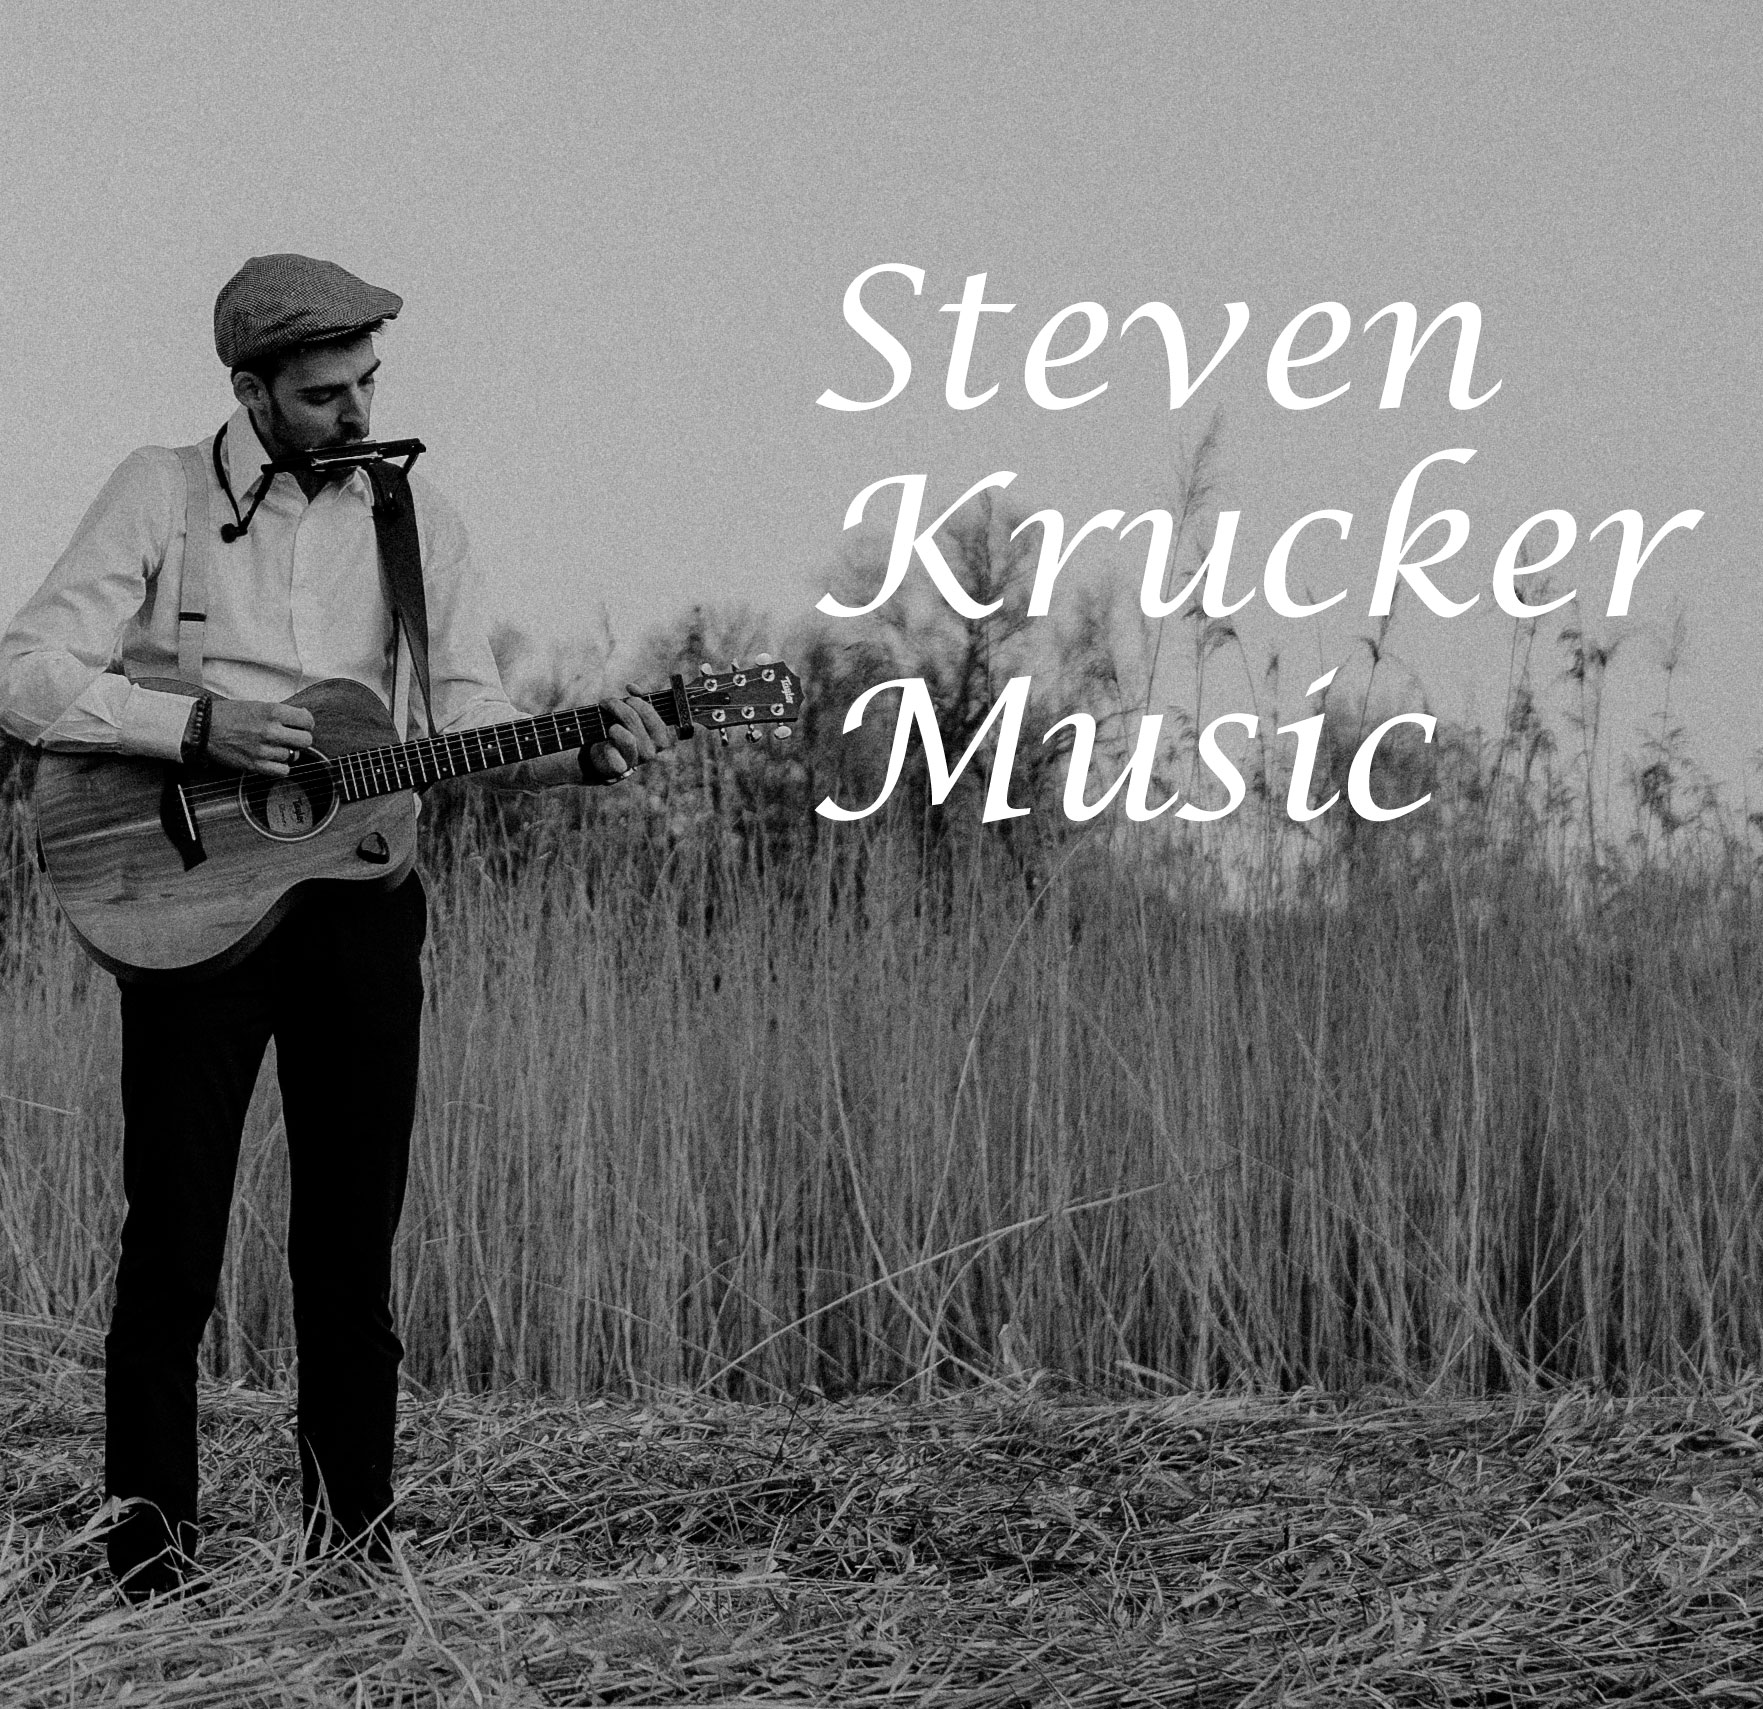 Steven Krucker – Singer Songwriter